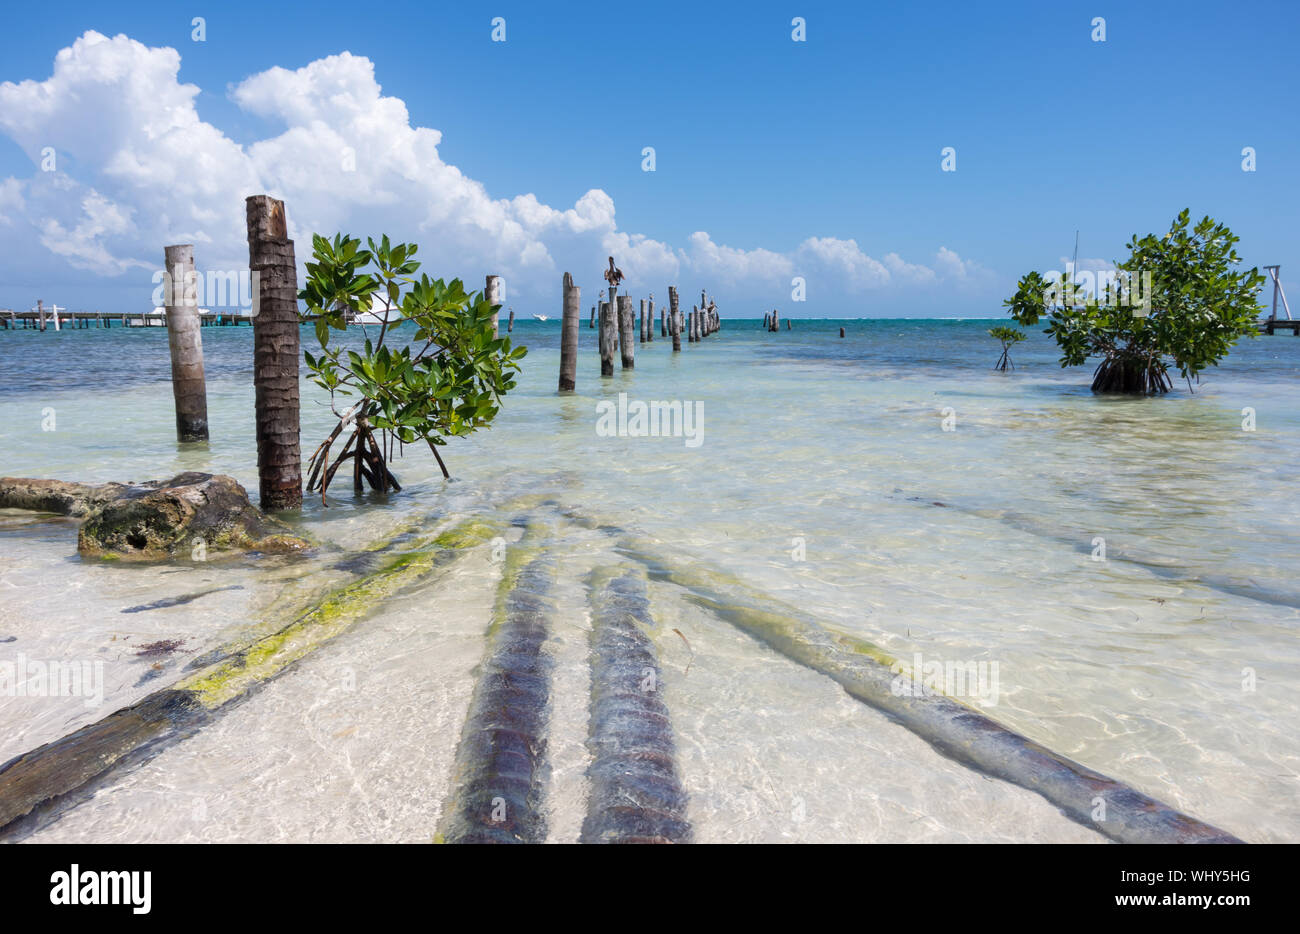 Karibische Küste von Caye Caulker Insel mit verlassenen alten Pier, Pelikane und kleine Mangroven. Belize, Mittelamerika. Stockfoto